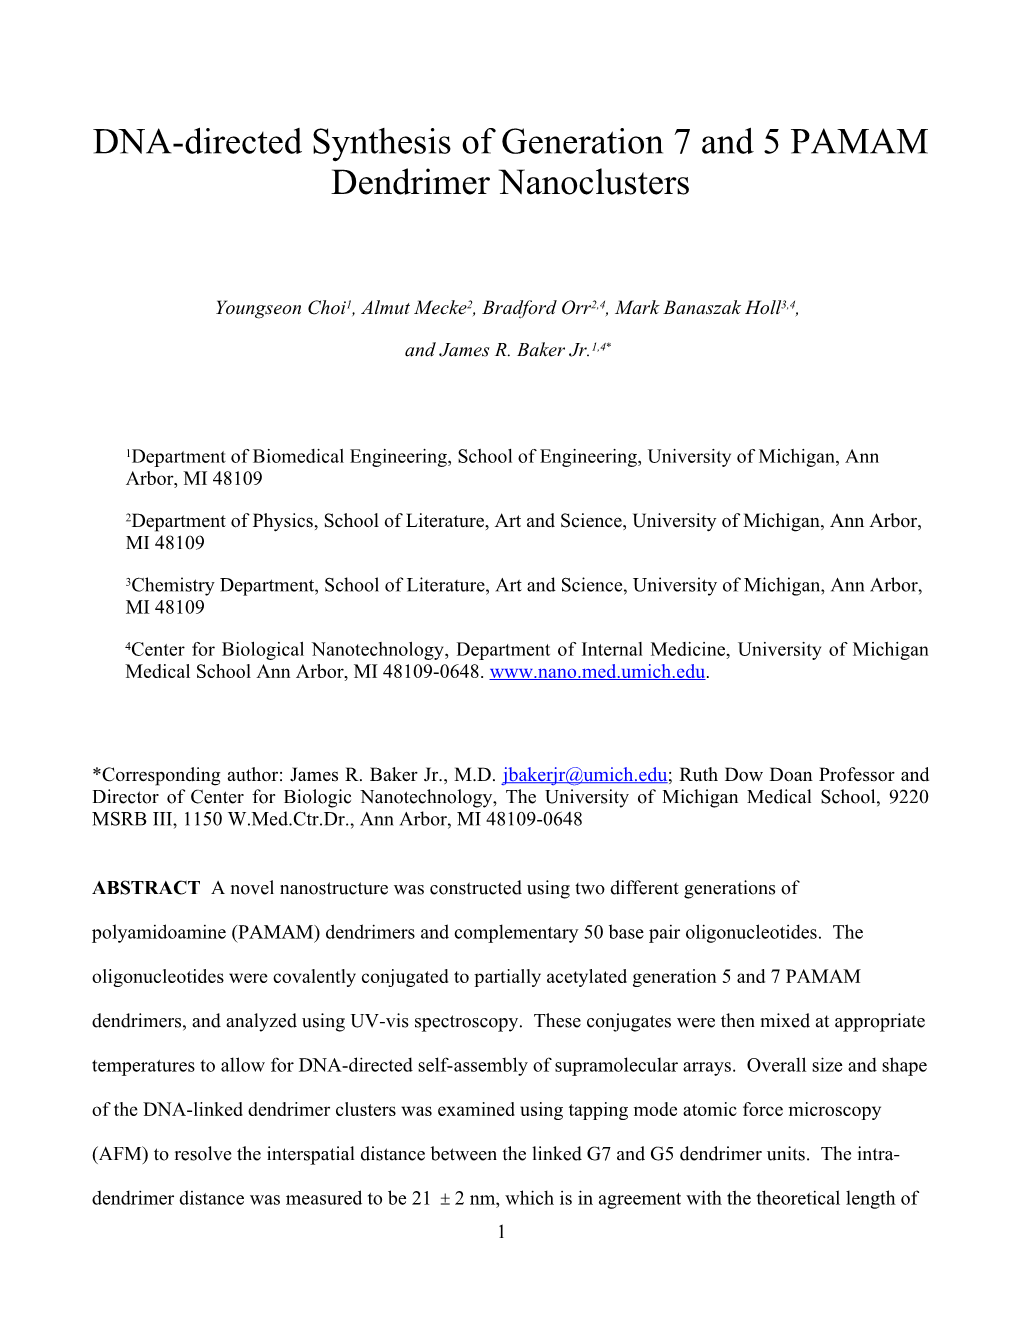 Manuscript for ACS Journal (Nanoletter) 03/11/03